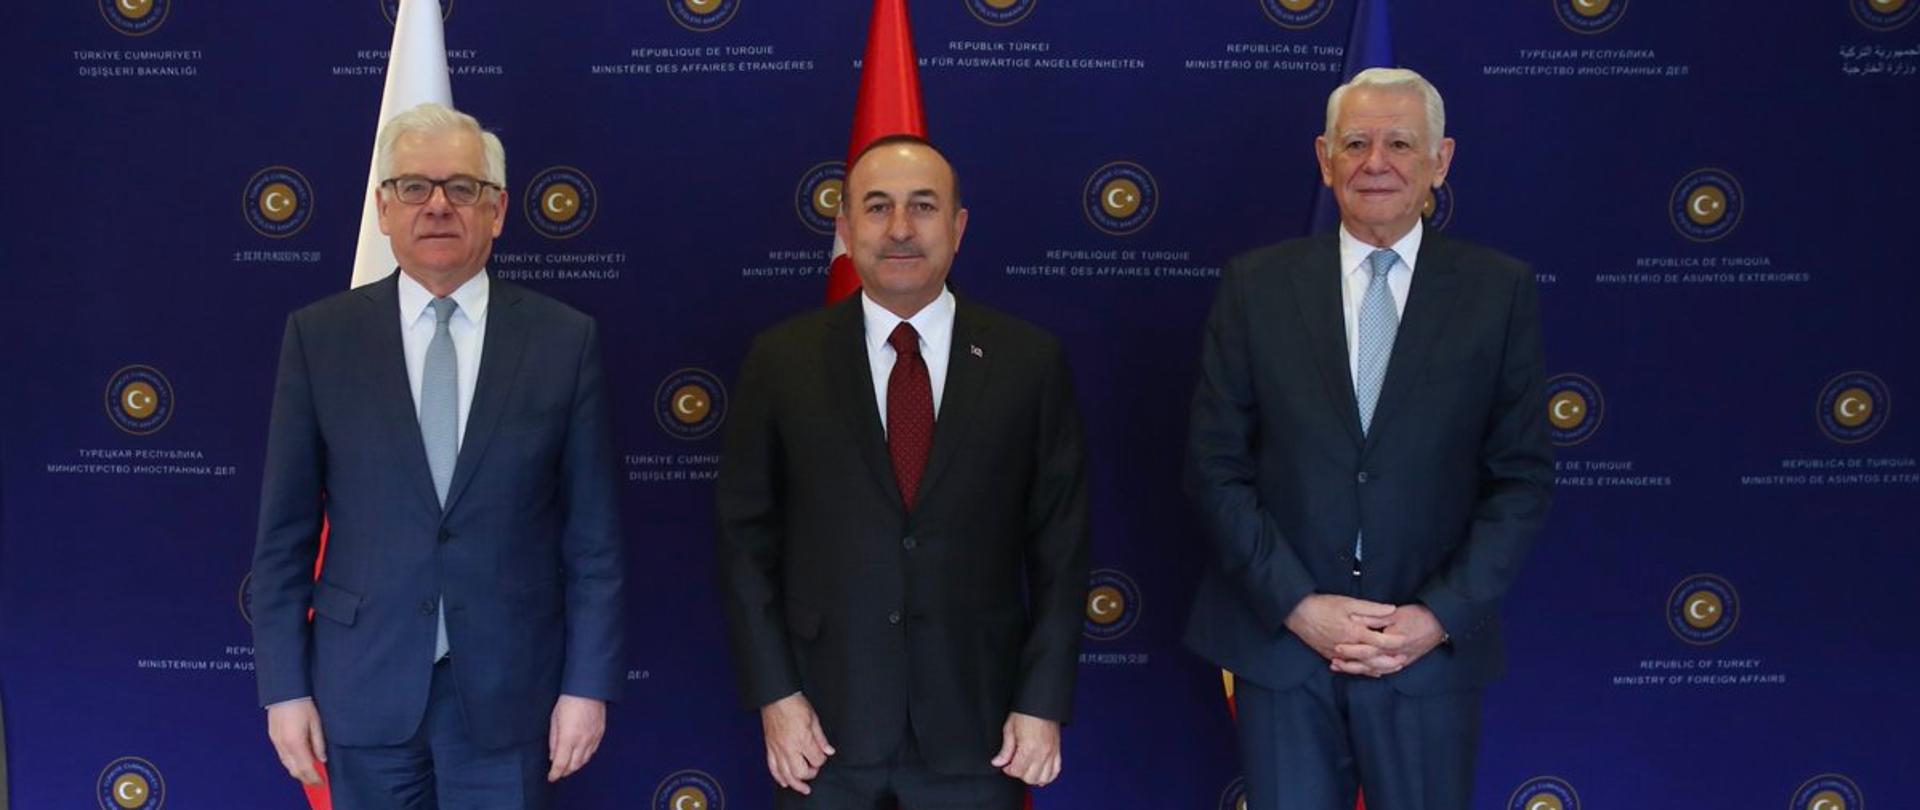 Spotkanie szefów dyplomacji Polski, Rumunii i Turcji w Ankarze